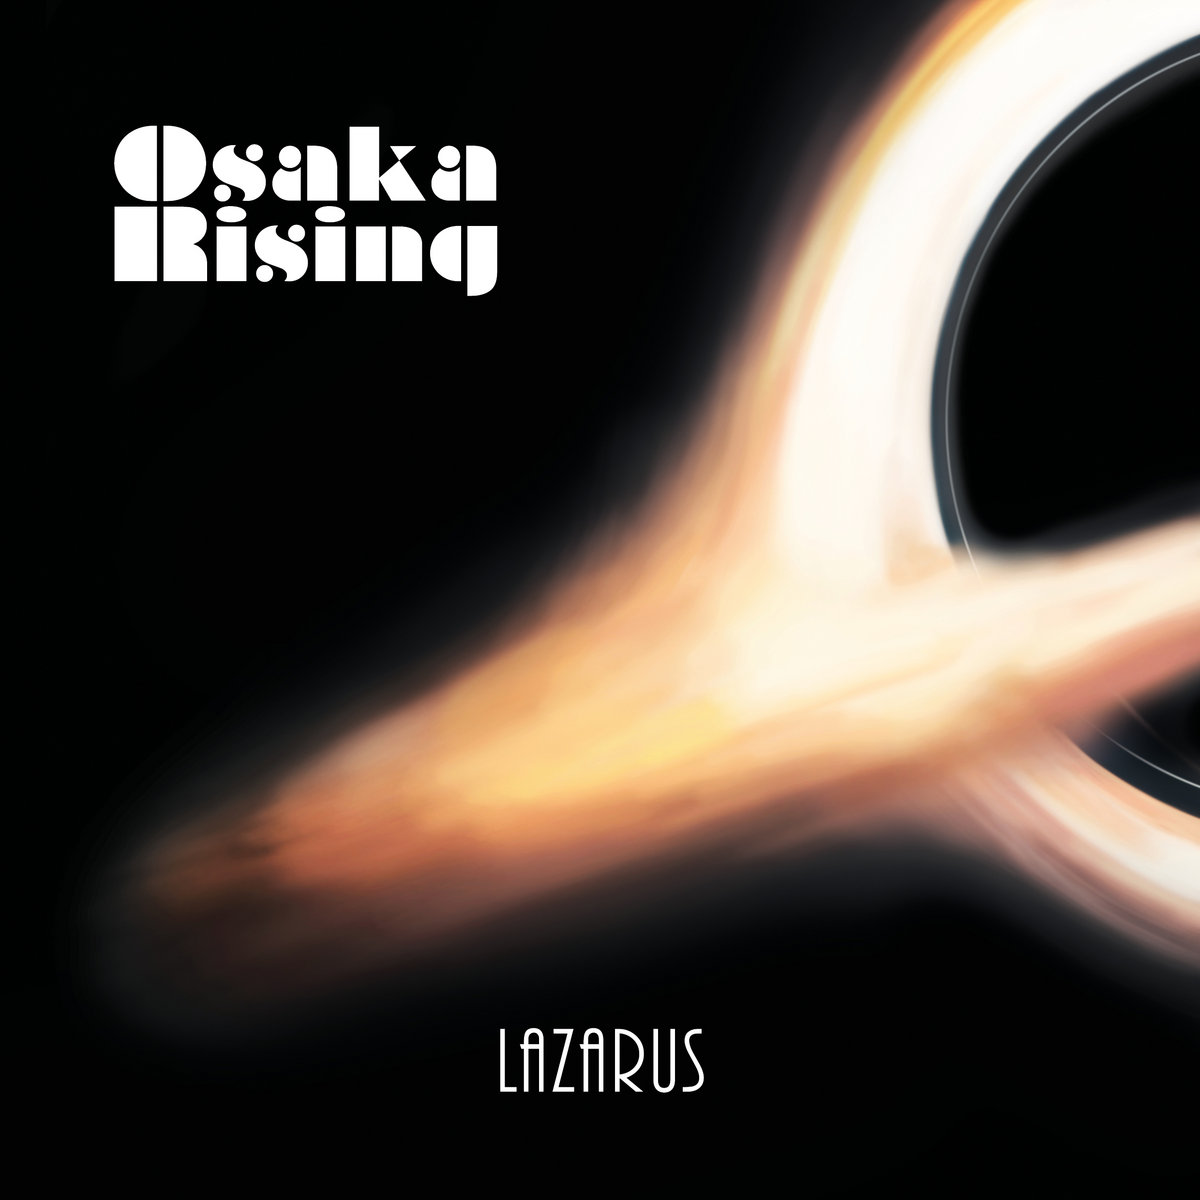 OsakaRising_Lazarus